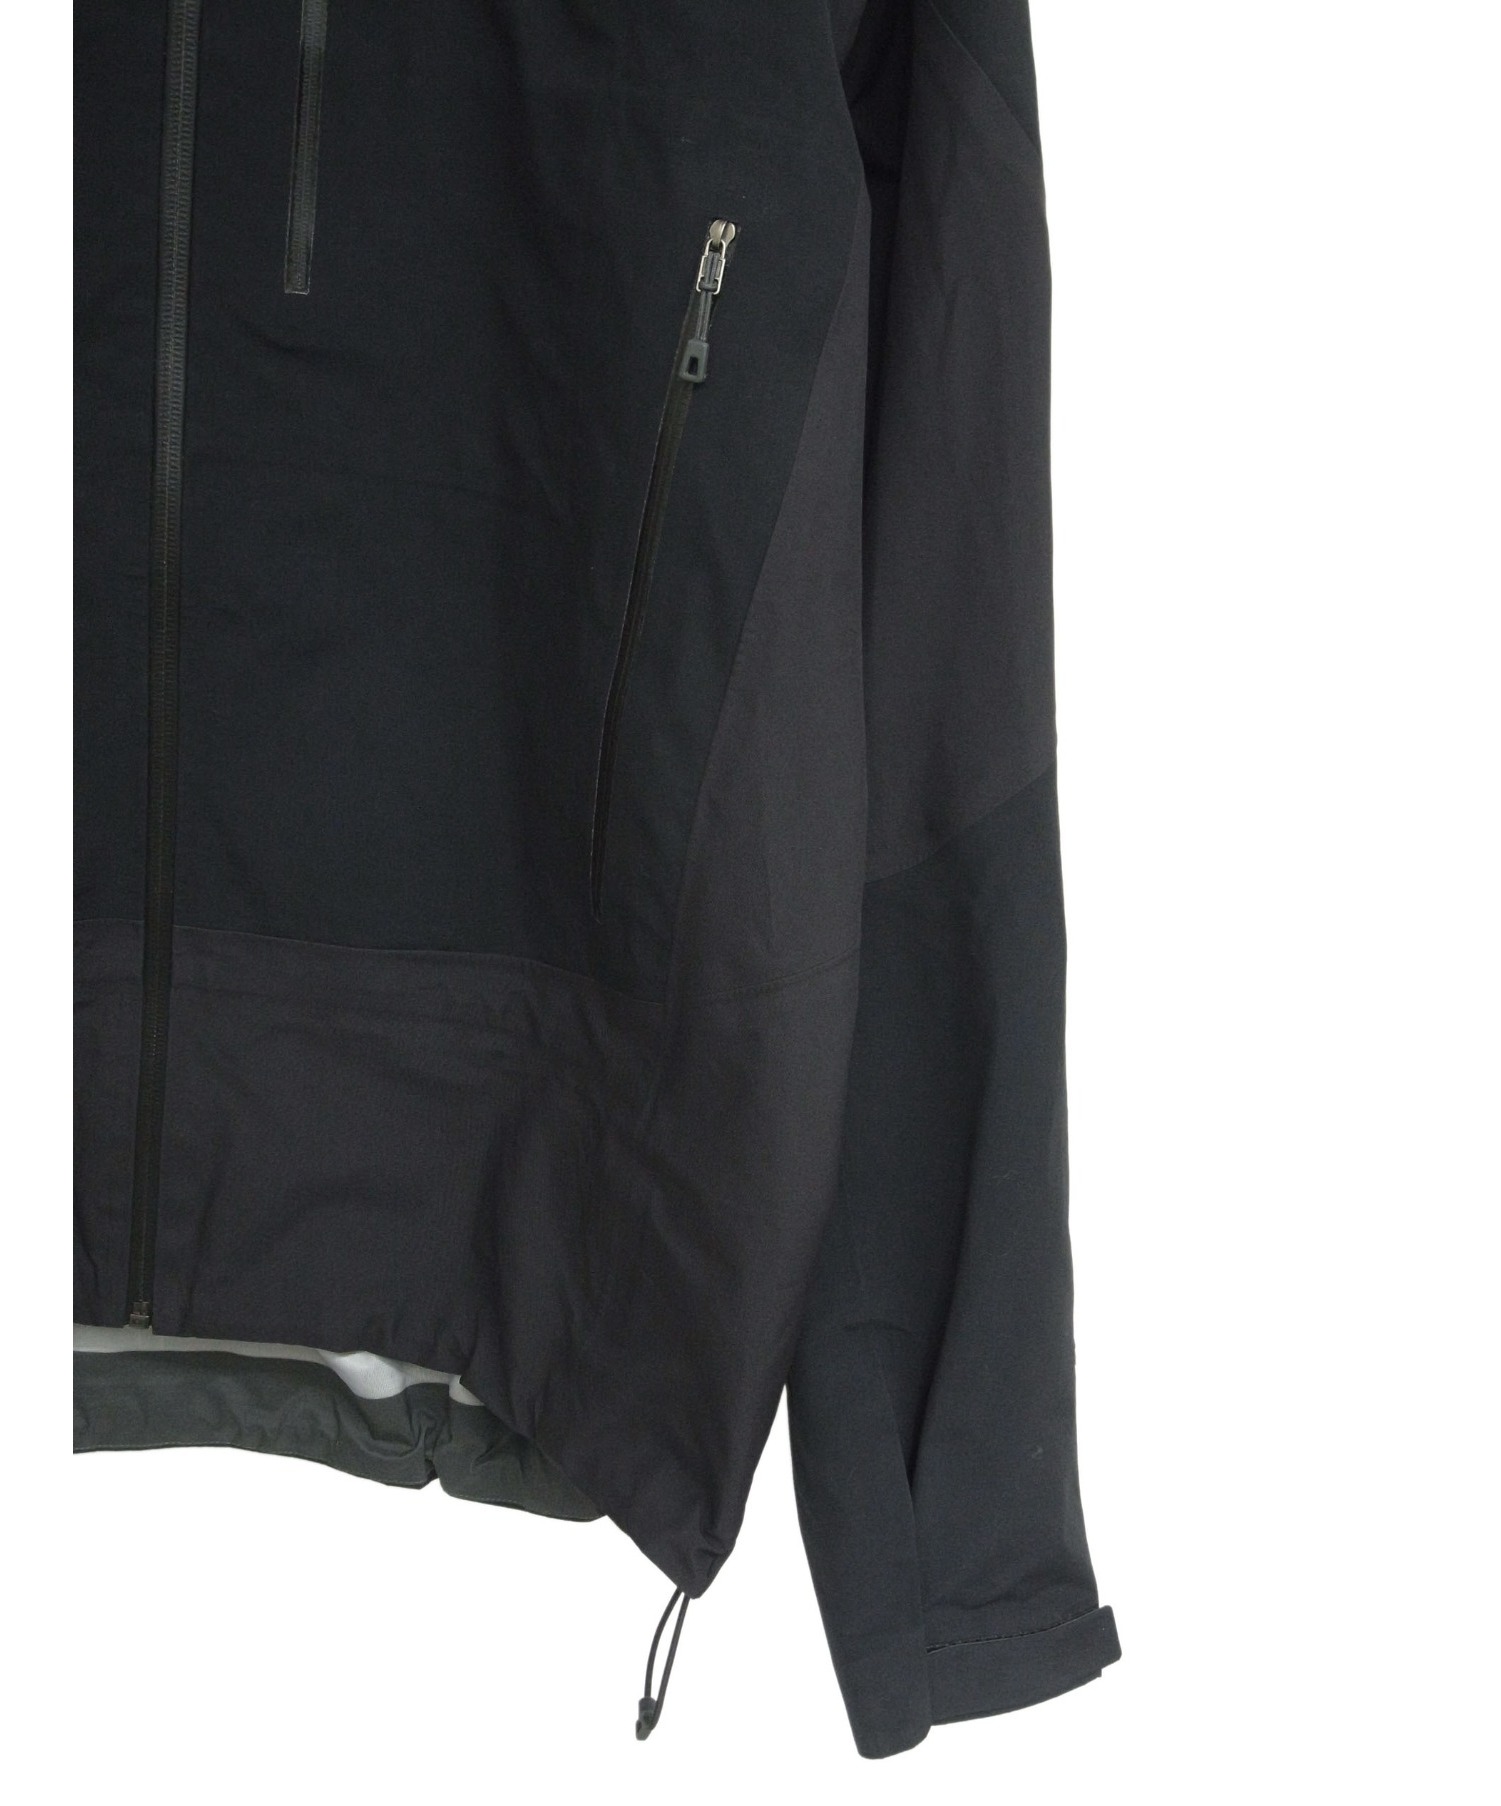 Patagonia (パタゴニア) トリオレットジャケット ブラック サイズ:L 83400 GORE-TEX